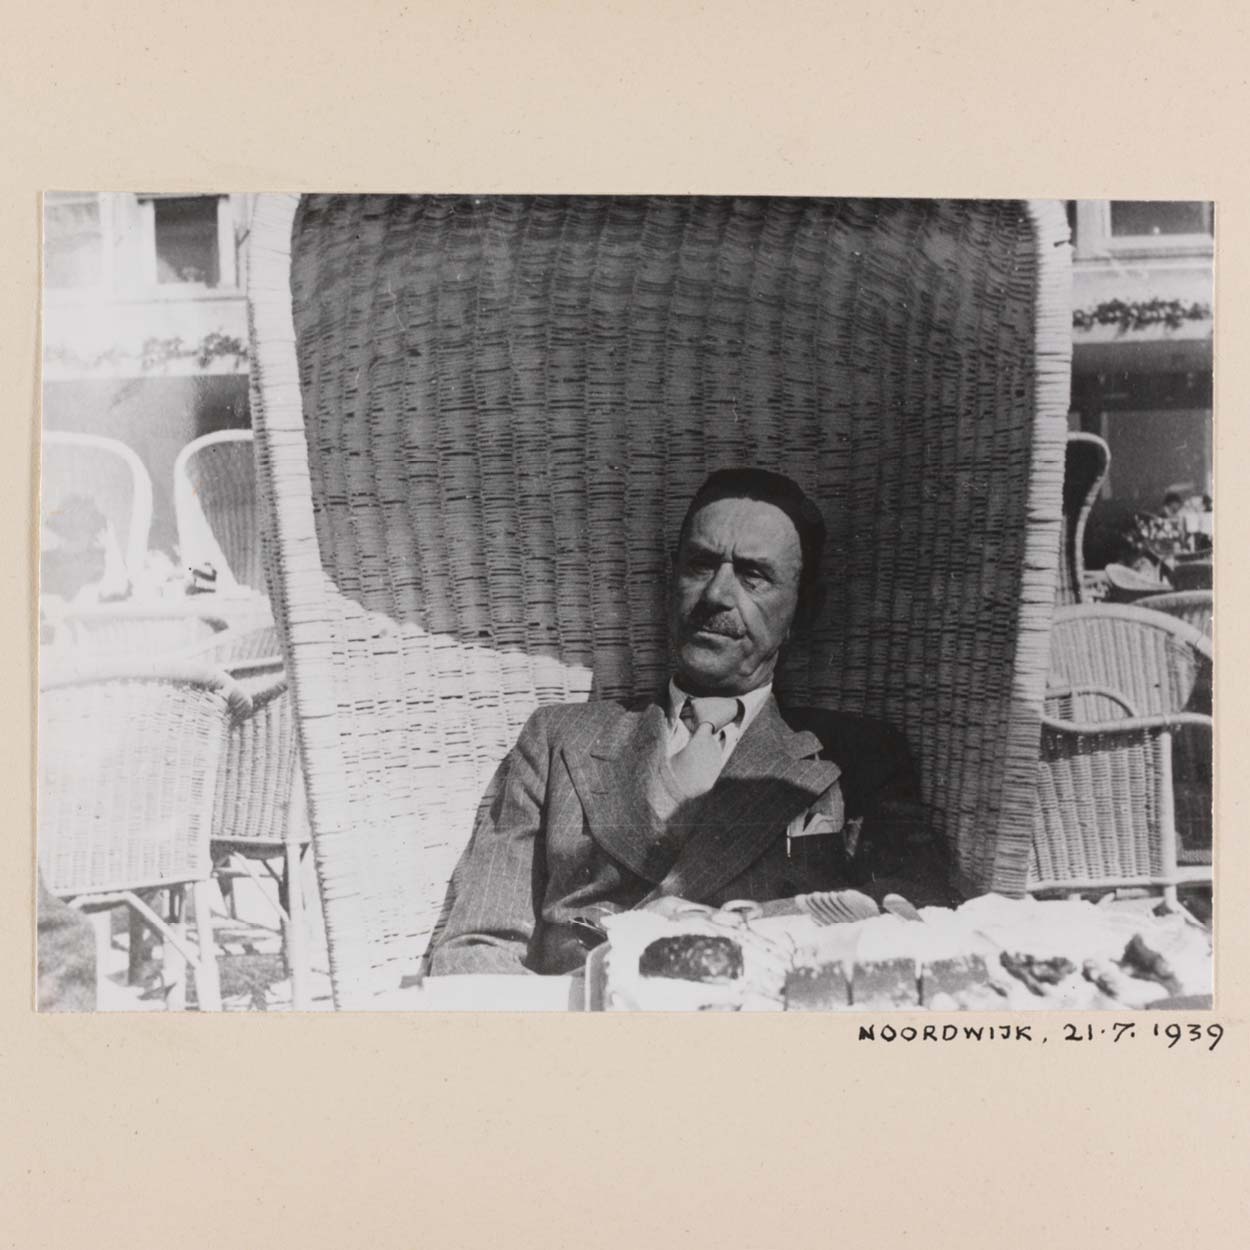 Zu sehen ist ein mit Ort und Datum unterschriebenes Foto des Schriftstellers Thomas Mann, der in einem Strandkorb sitzt.